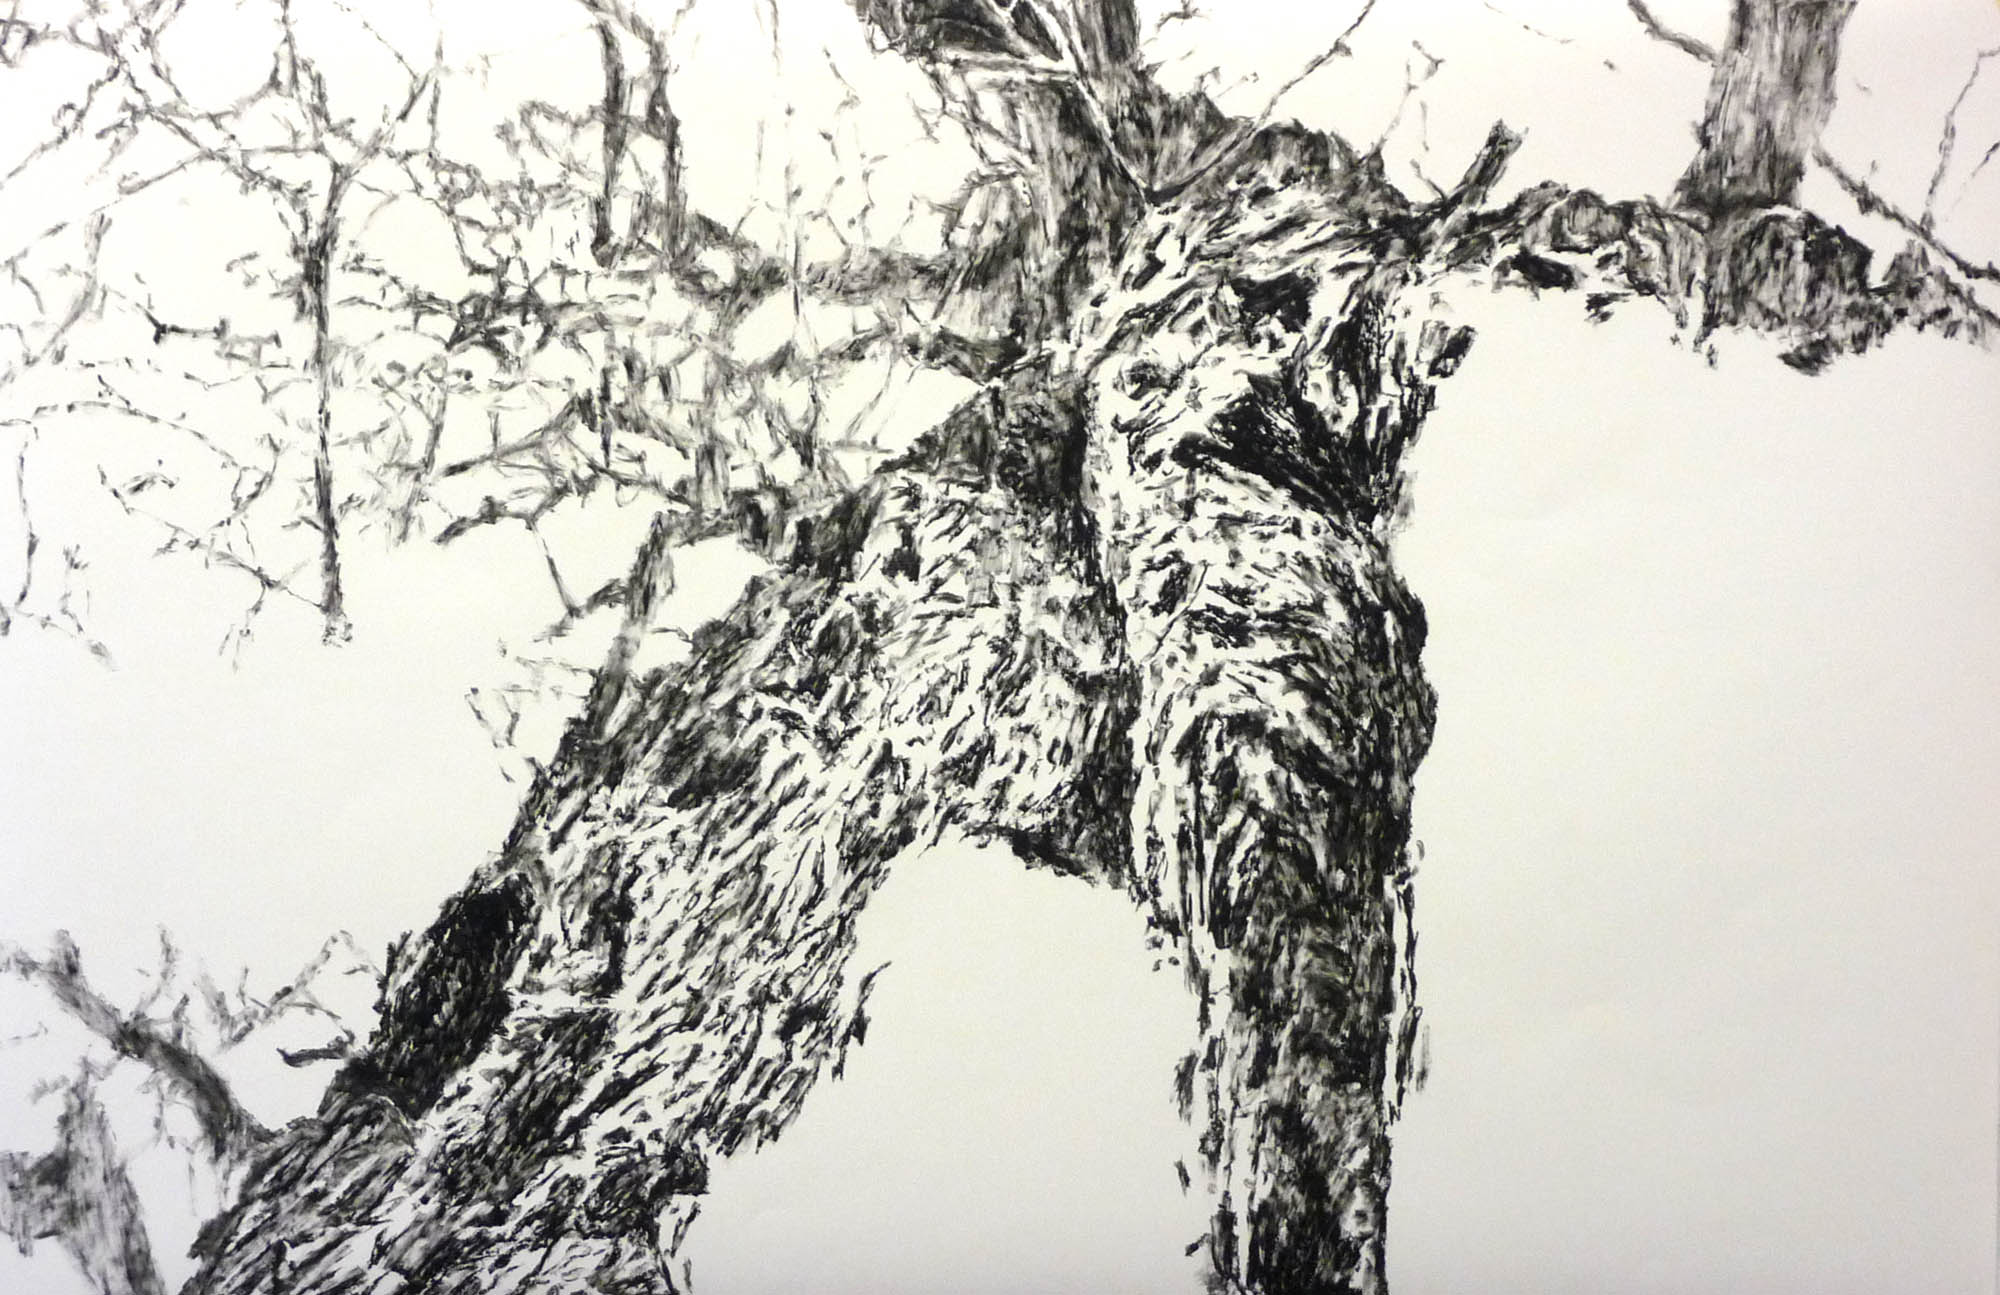 Baum-Segment, 2014, Ölpastell auf Papier, 100 x 150 cm © Dieter Konsek